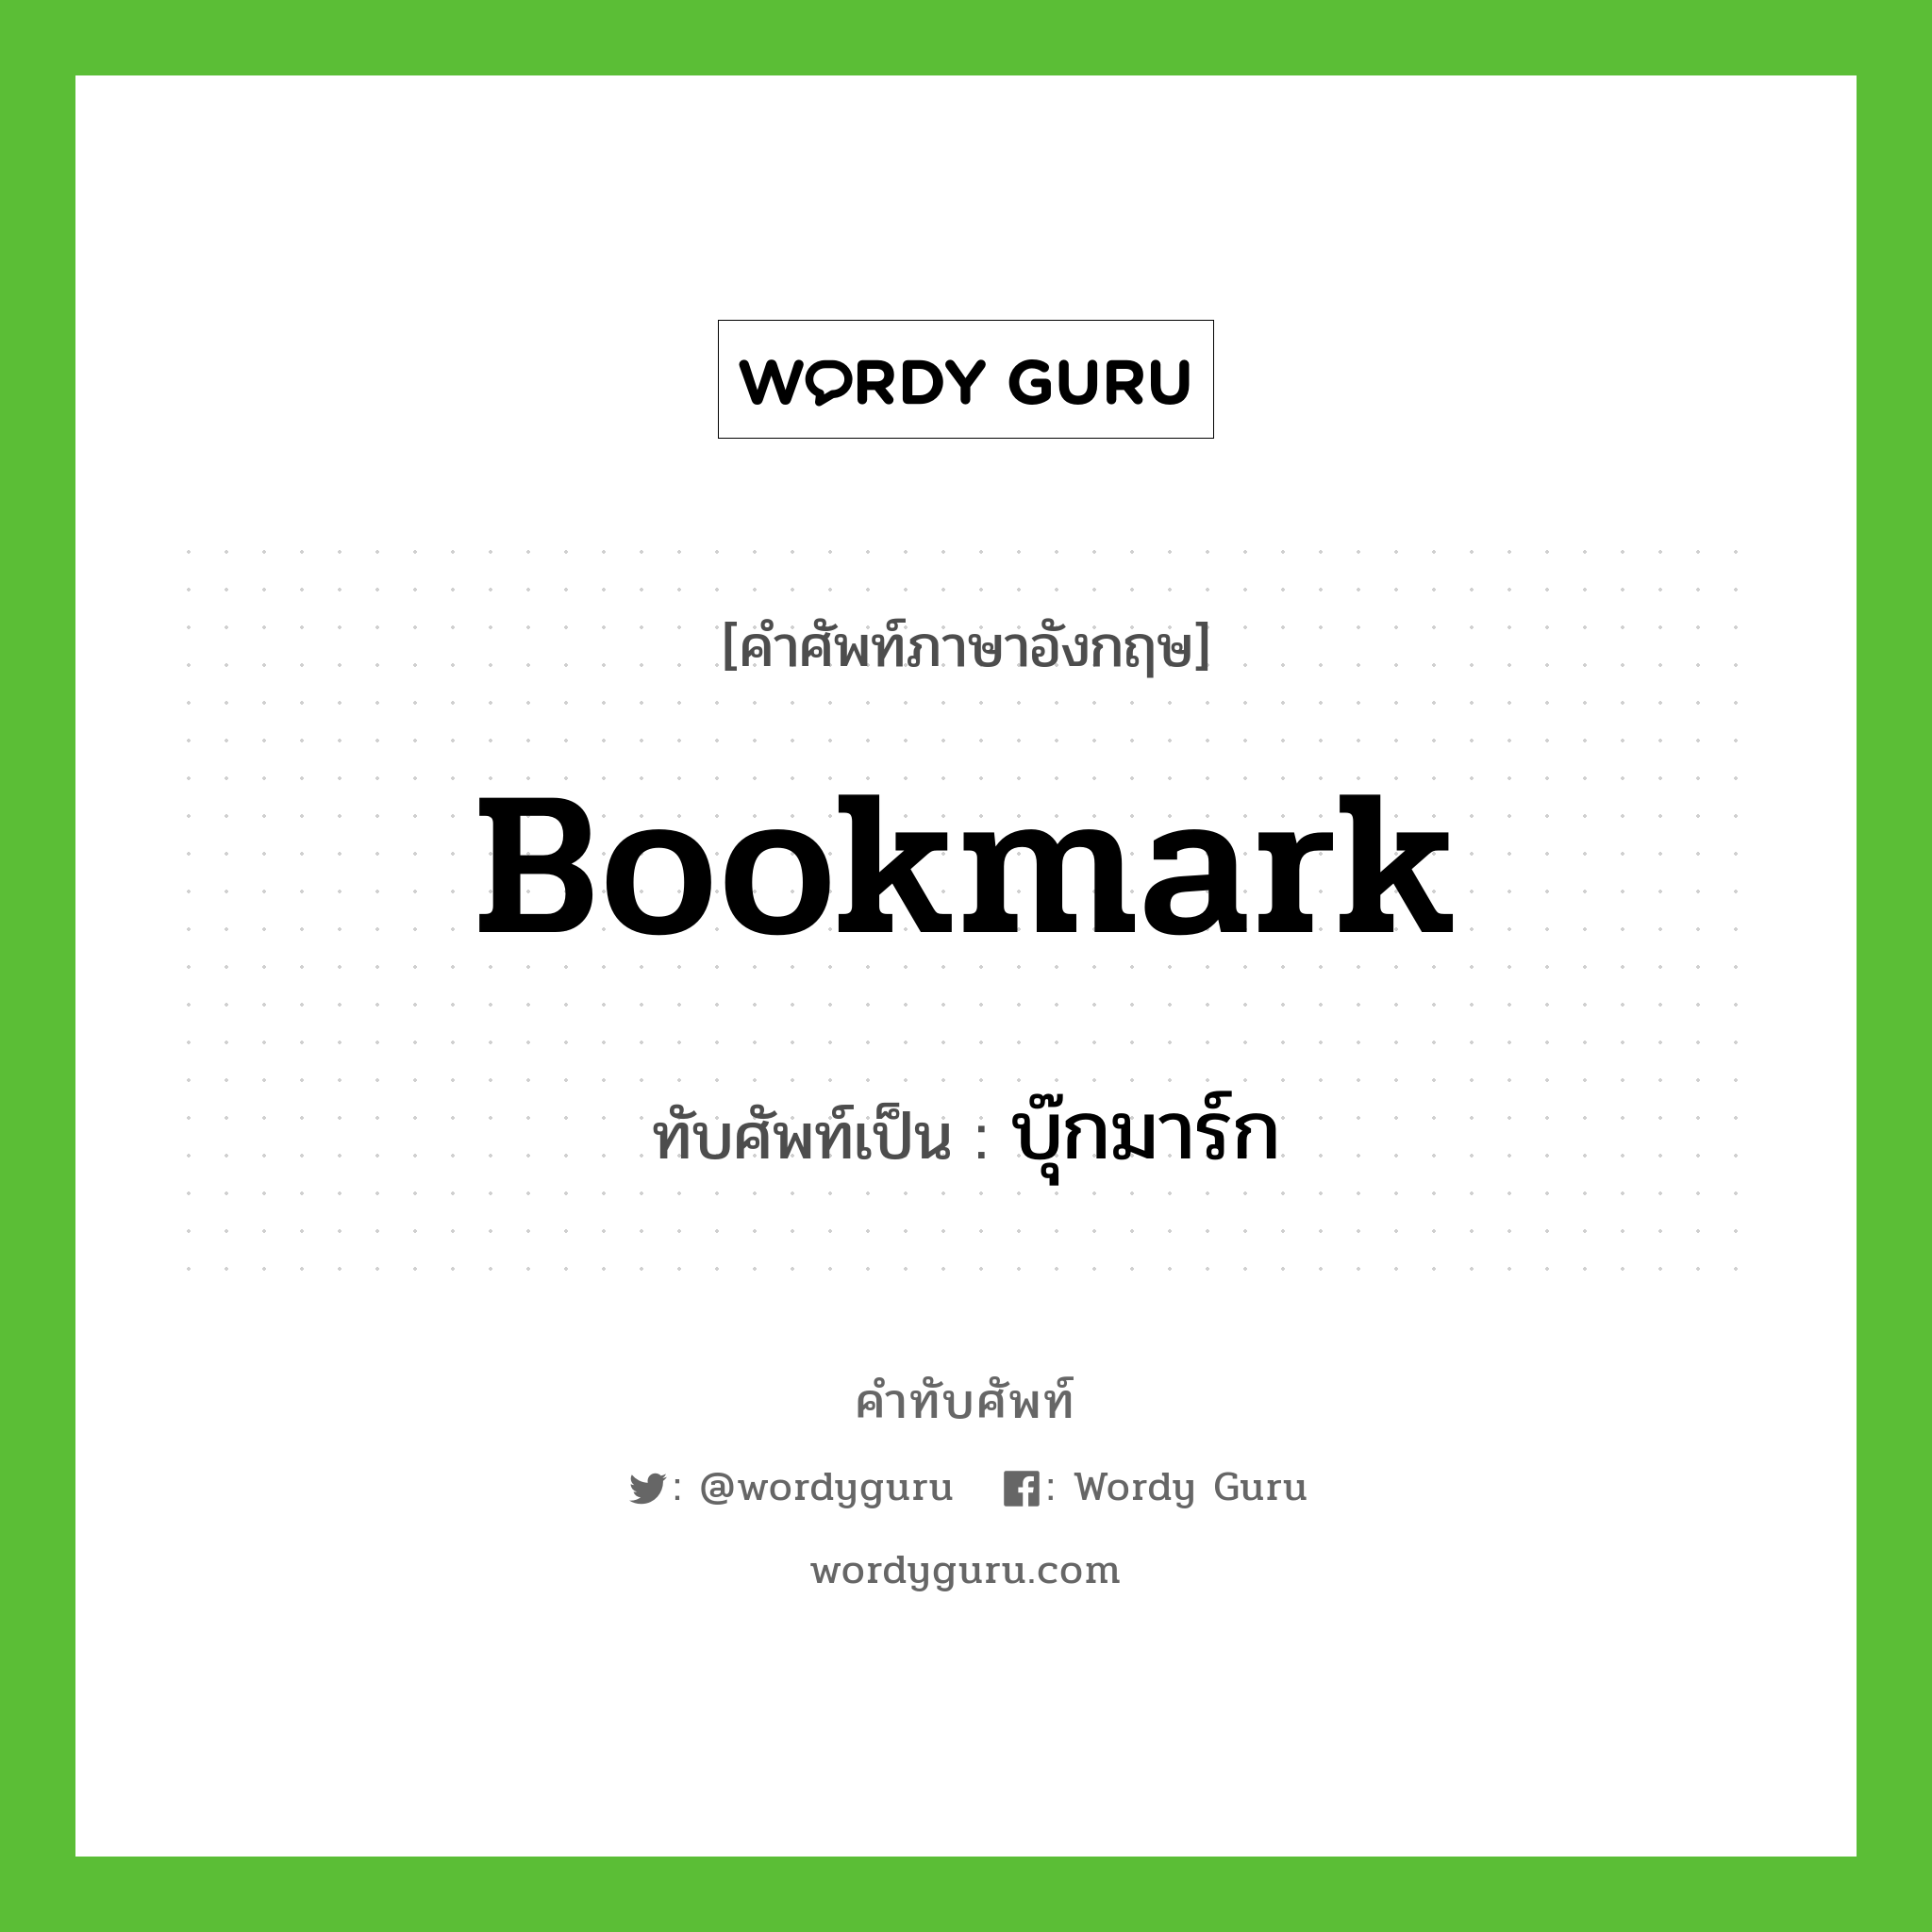 bookmark เขียนเป็นคำไทยว่าอะไร?, คำศัพท์ภาษาอังกฤษ bookmark ทับศัพท์เป็น บุ๊กมาร์ก